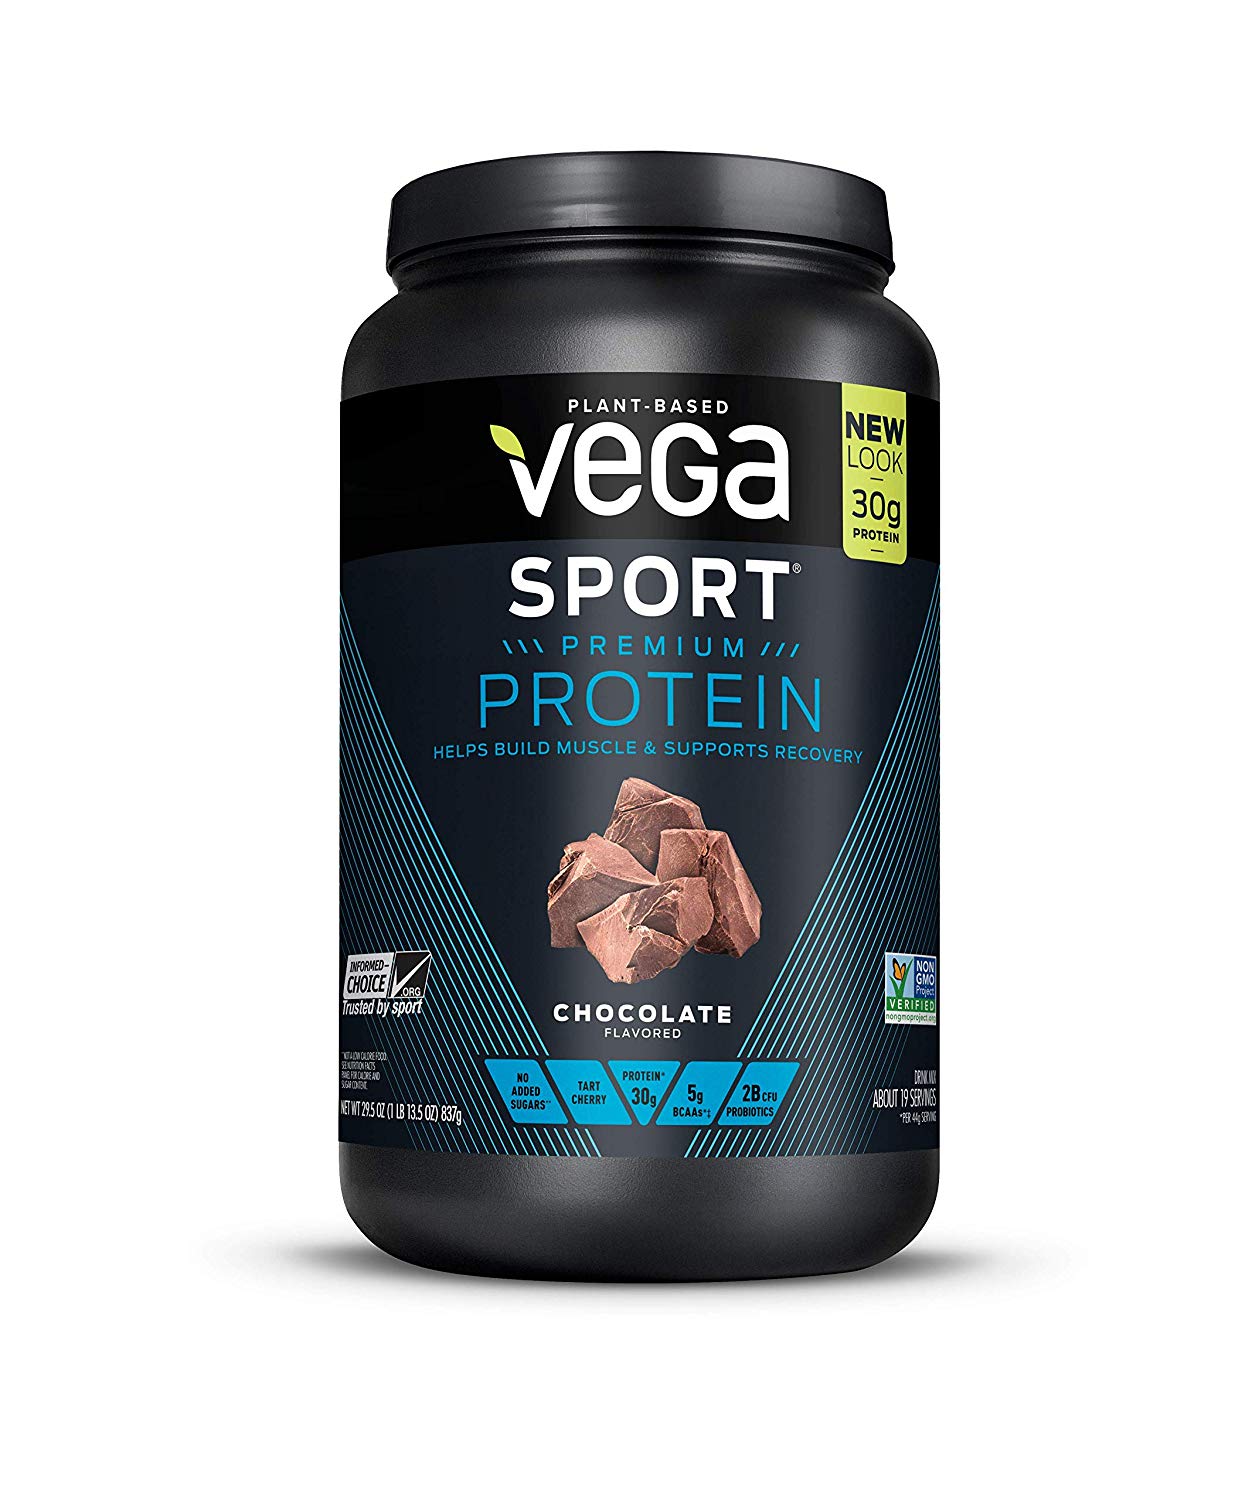 Vega Sport Protein Powder - The Butt Lifter Blog